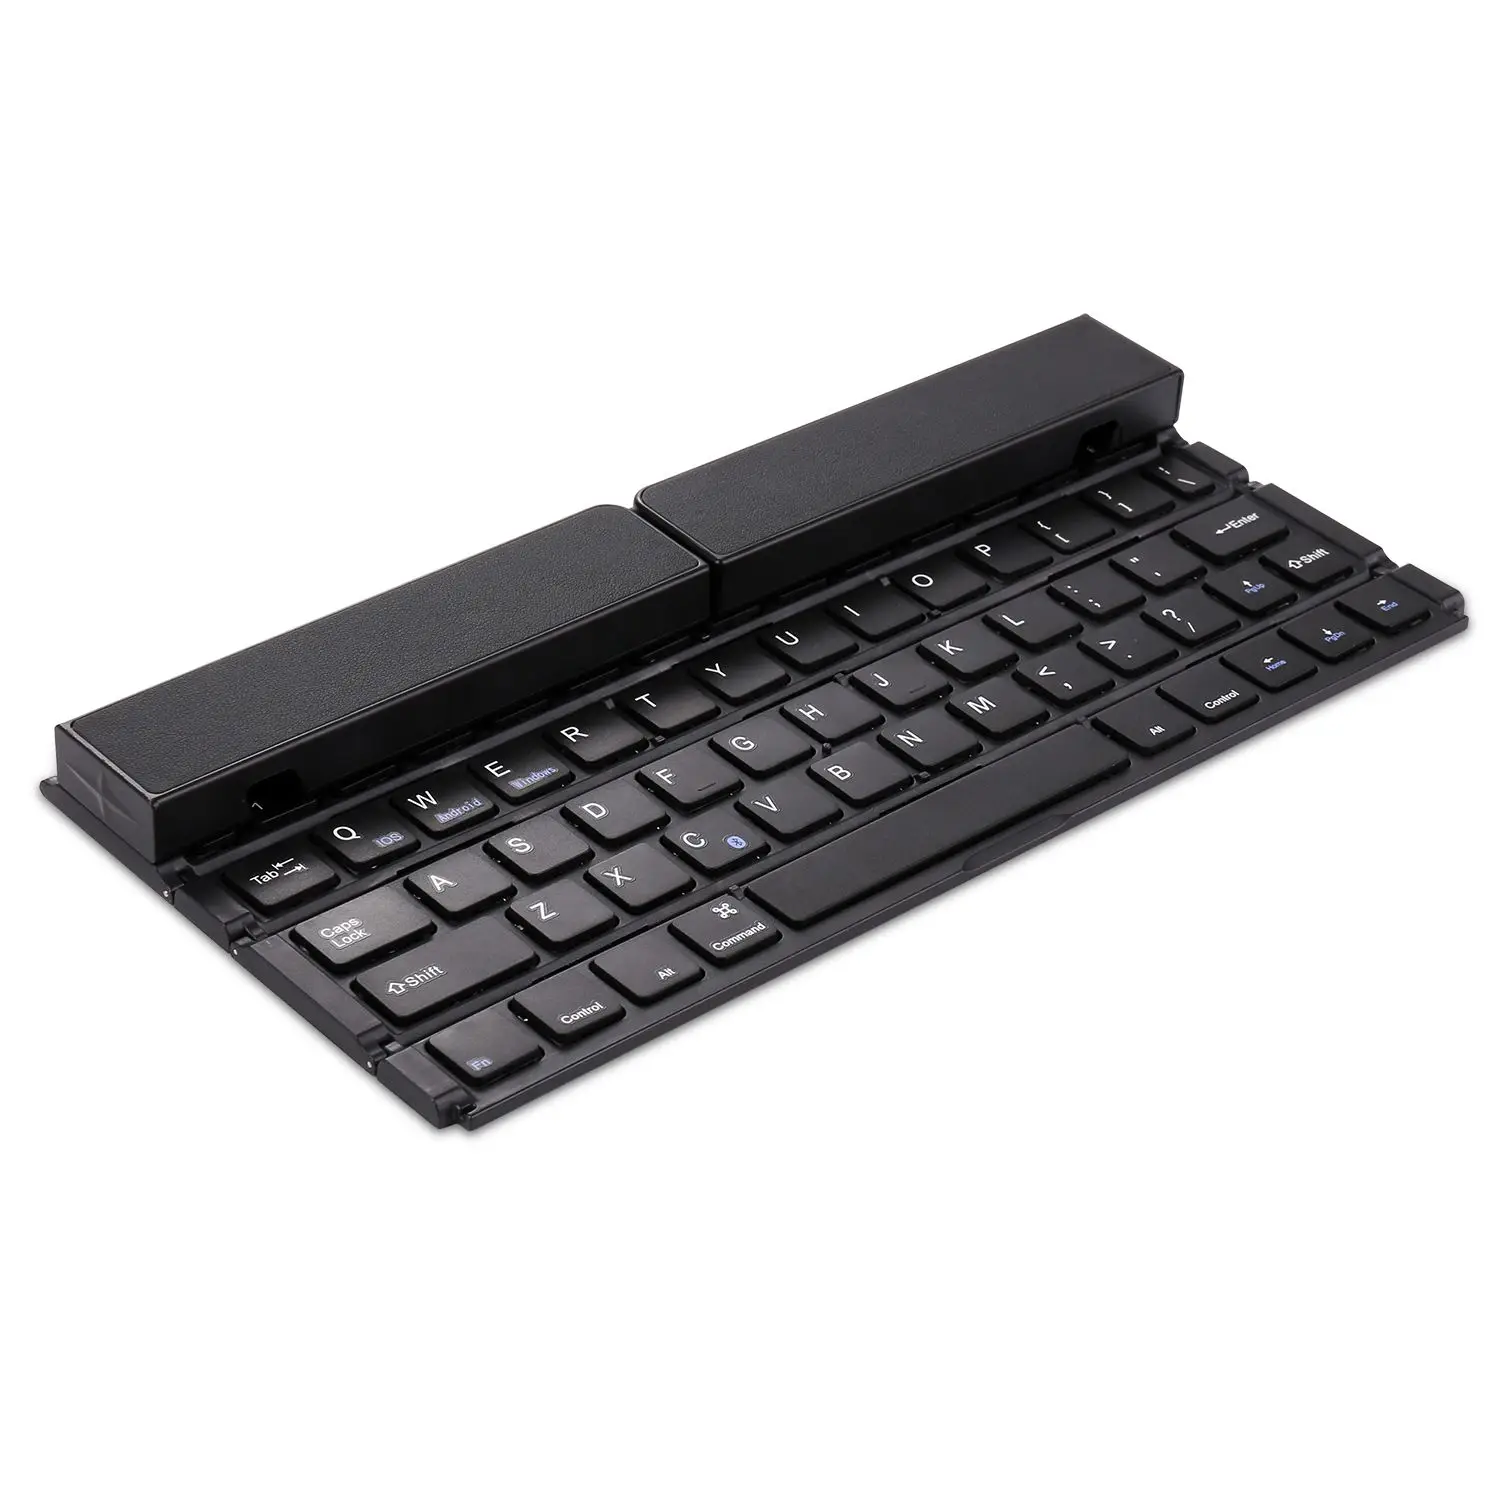 Складная клавиатура, портативная ультратонкая беспроводная клавиатура BT из алюминиевого сплава с подставкой универсальная для iPhone/iPad/Windows